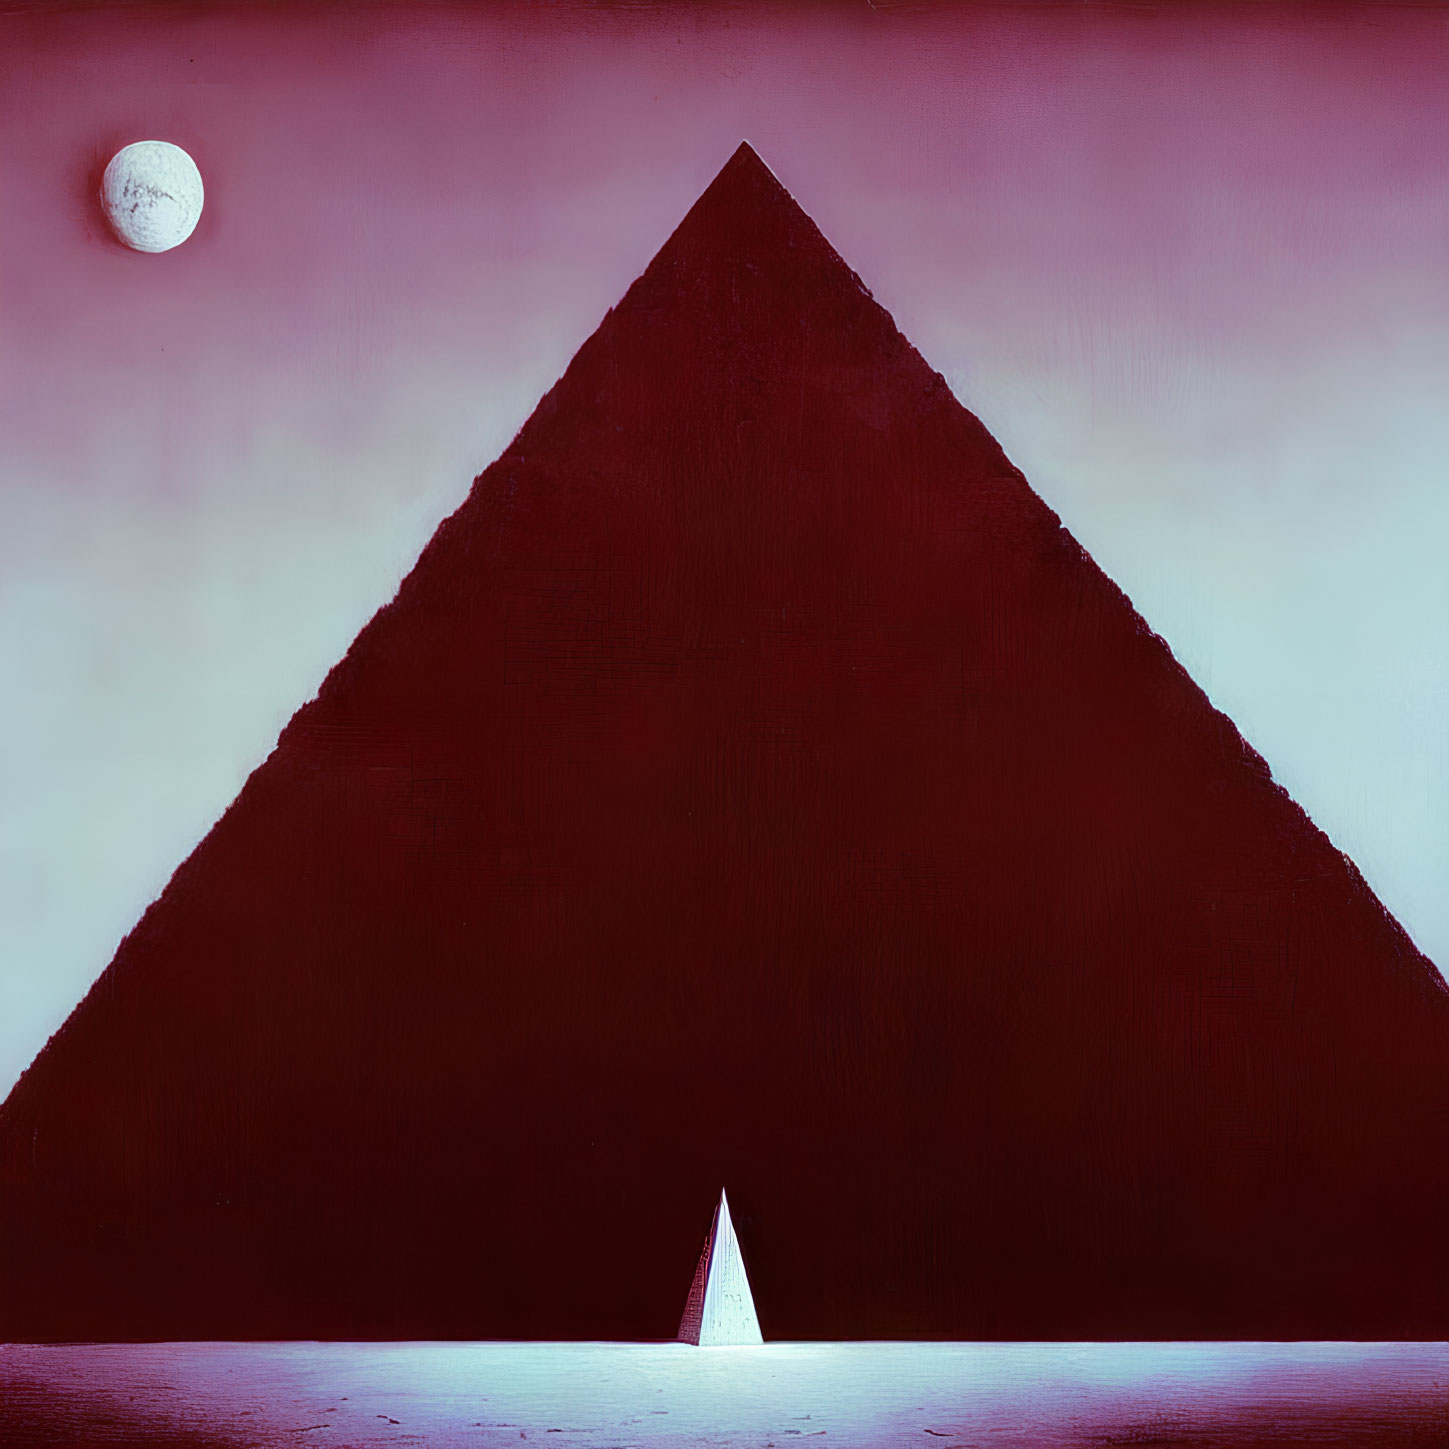 Dark pyramid, pink background, sailboat, full moon - Surreal image.